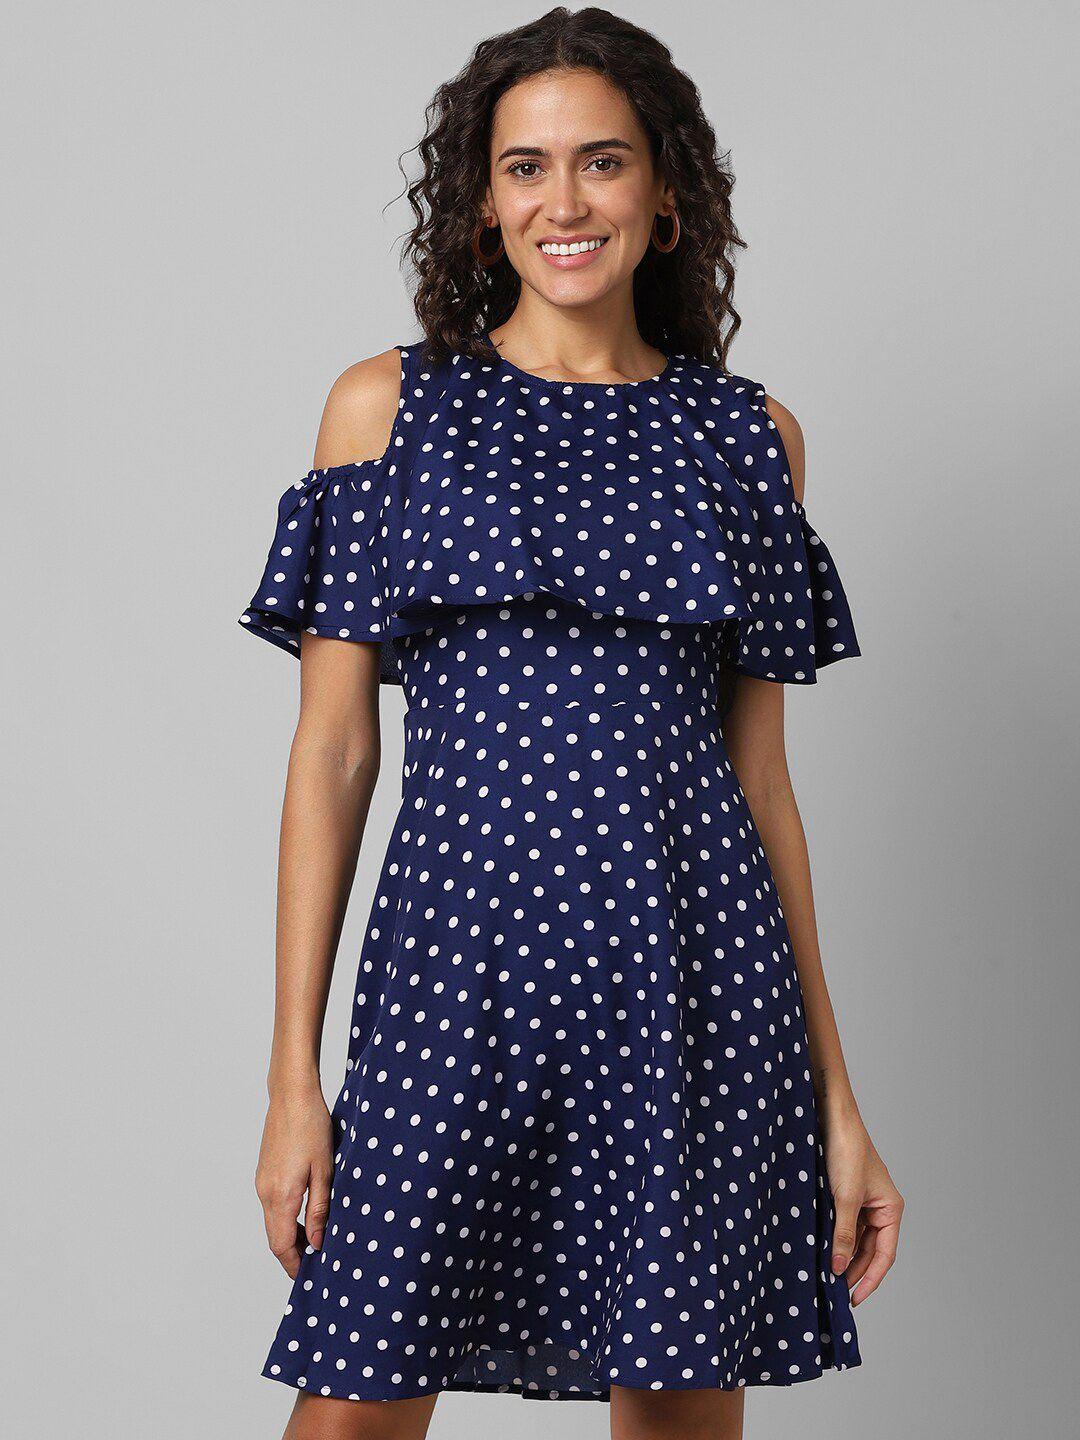 pantaloons polka dot printed cold-shoulder shoulder fit & flare dress